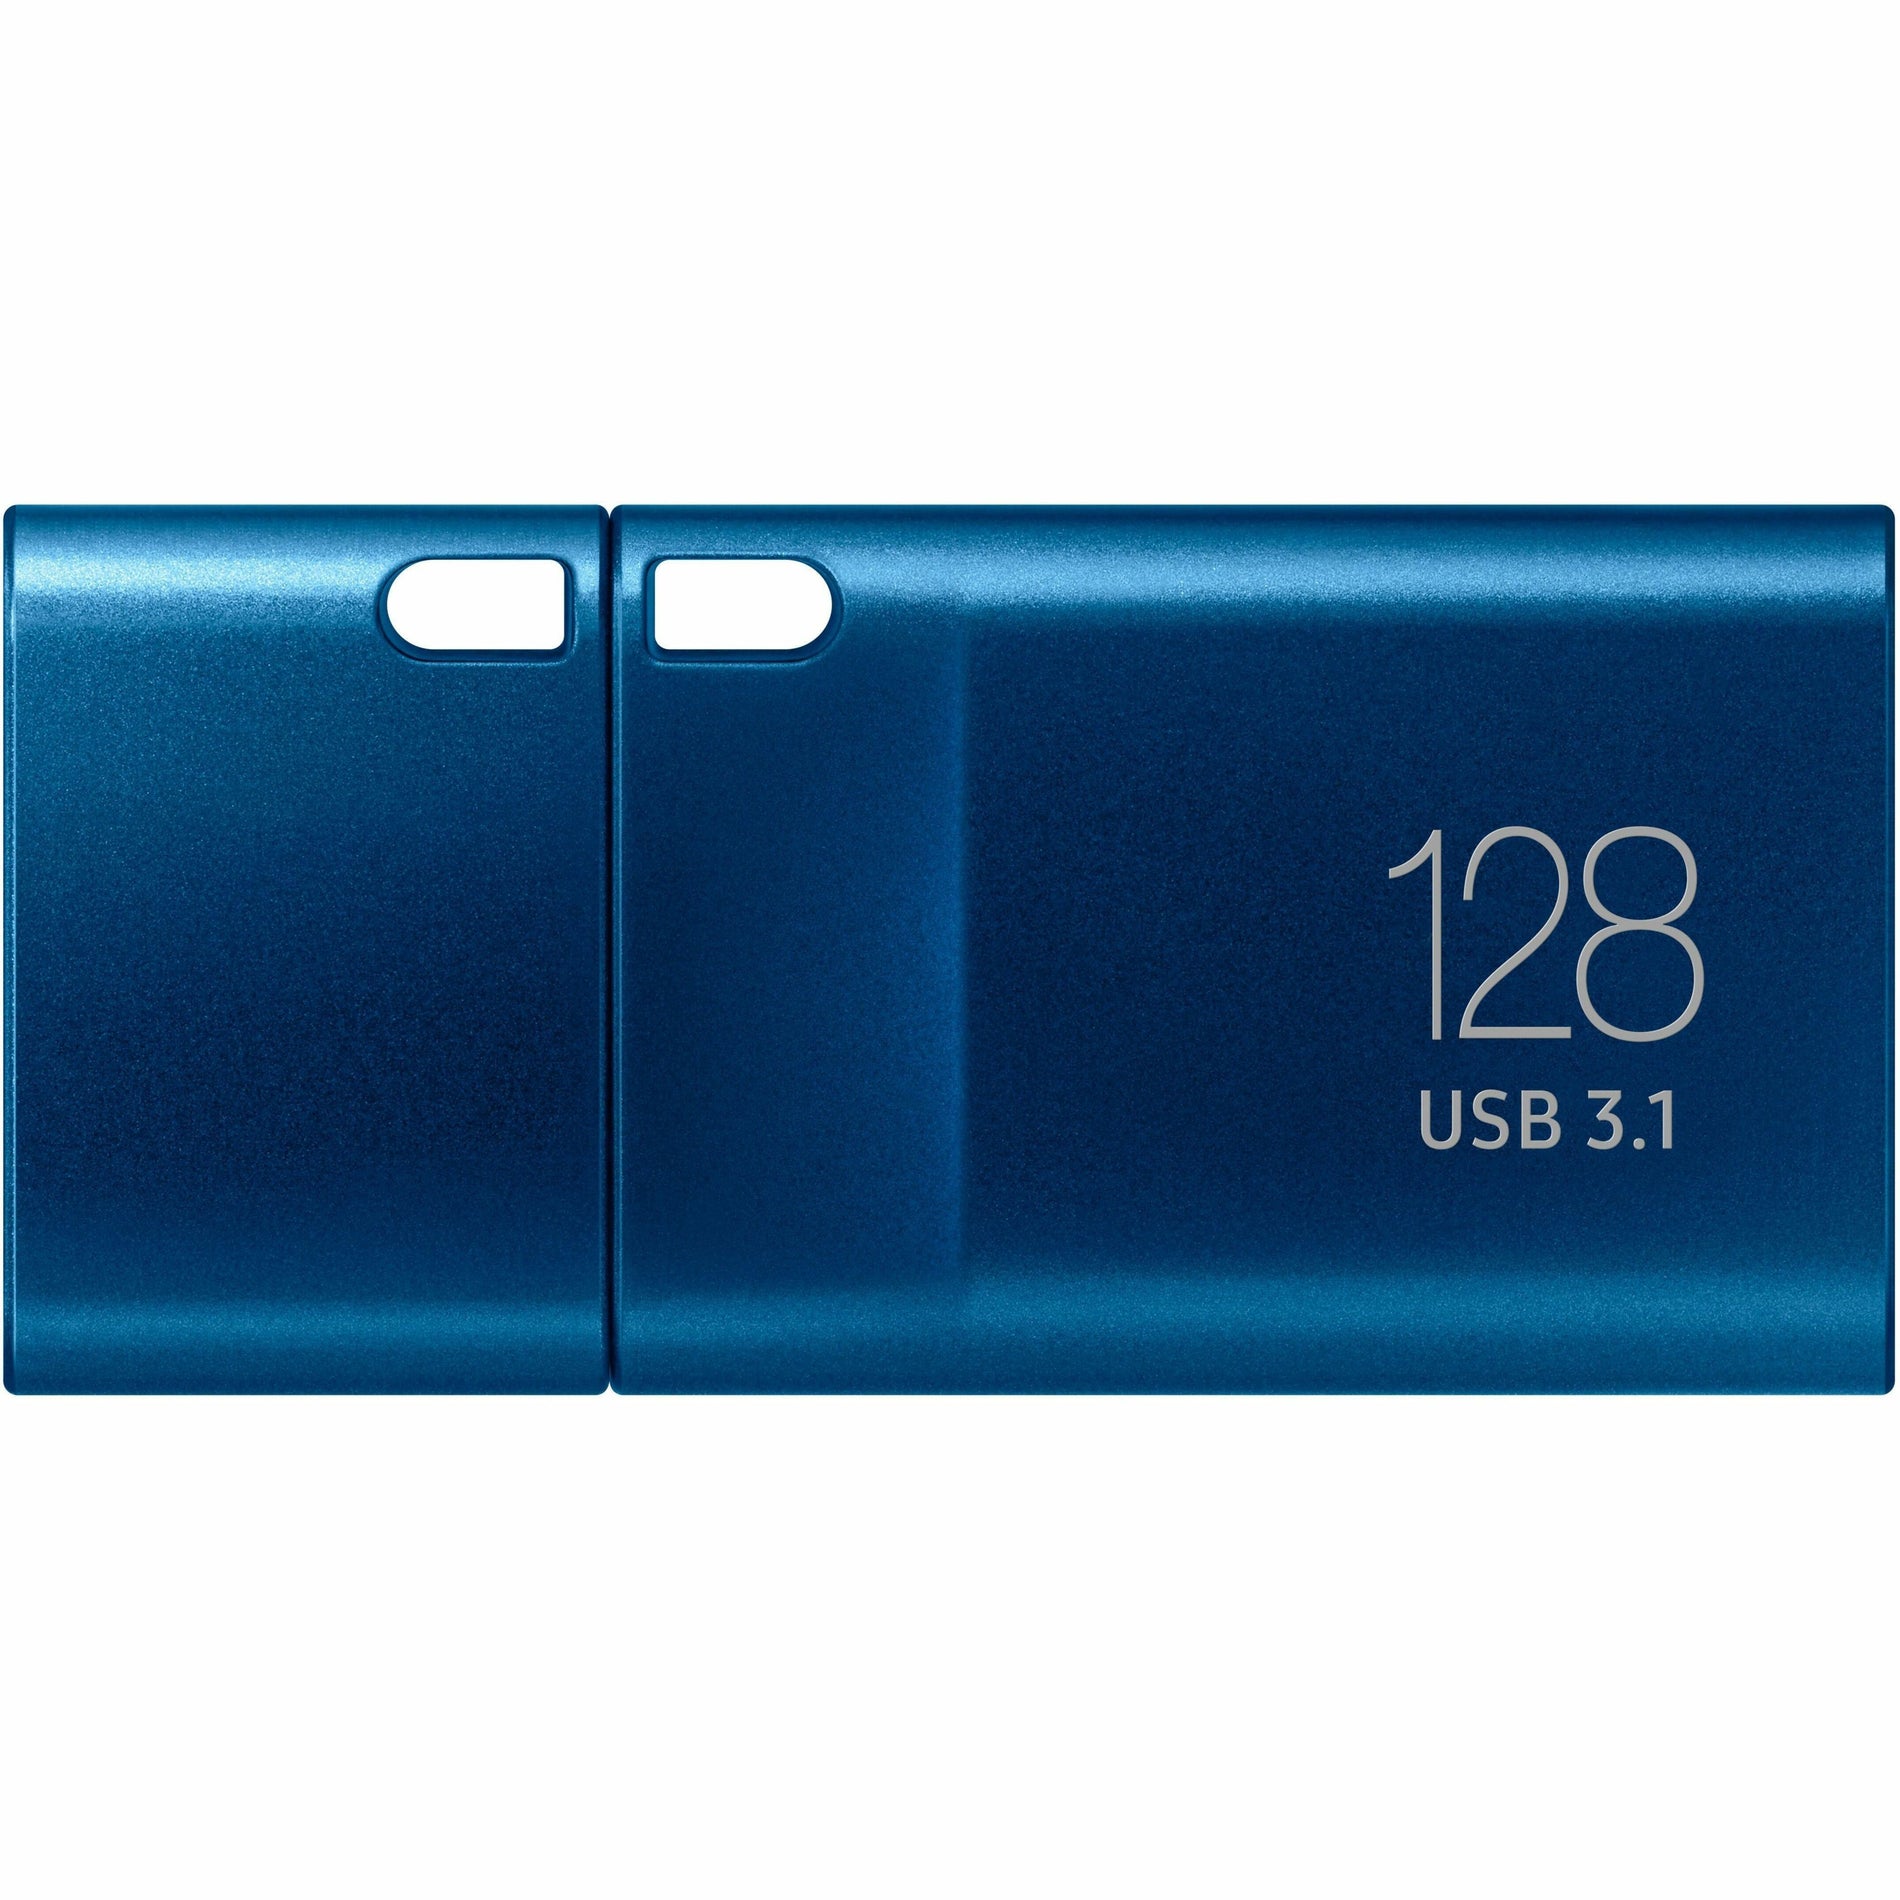 Samsung USB Type-C Flash Drive 128GB (MUF-128DA/AM)